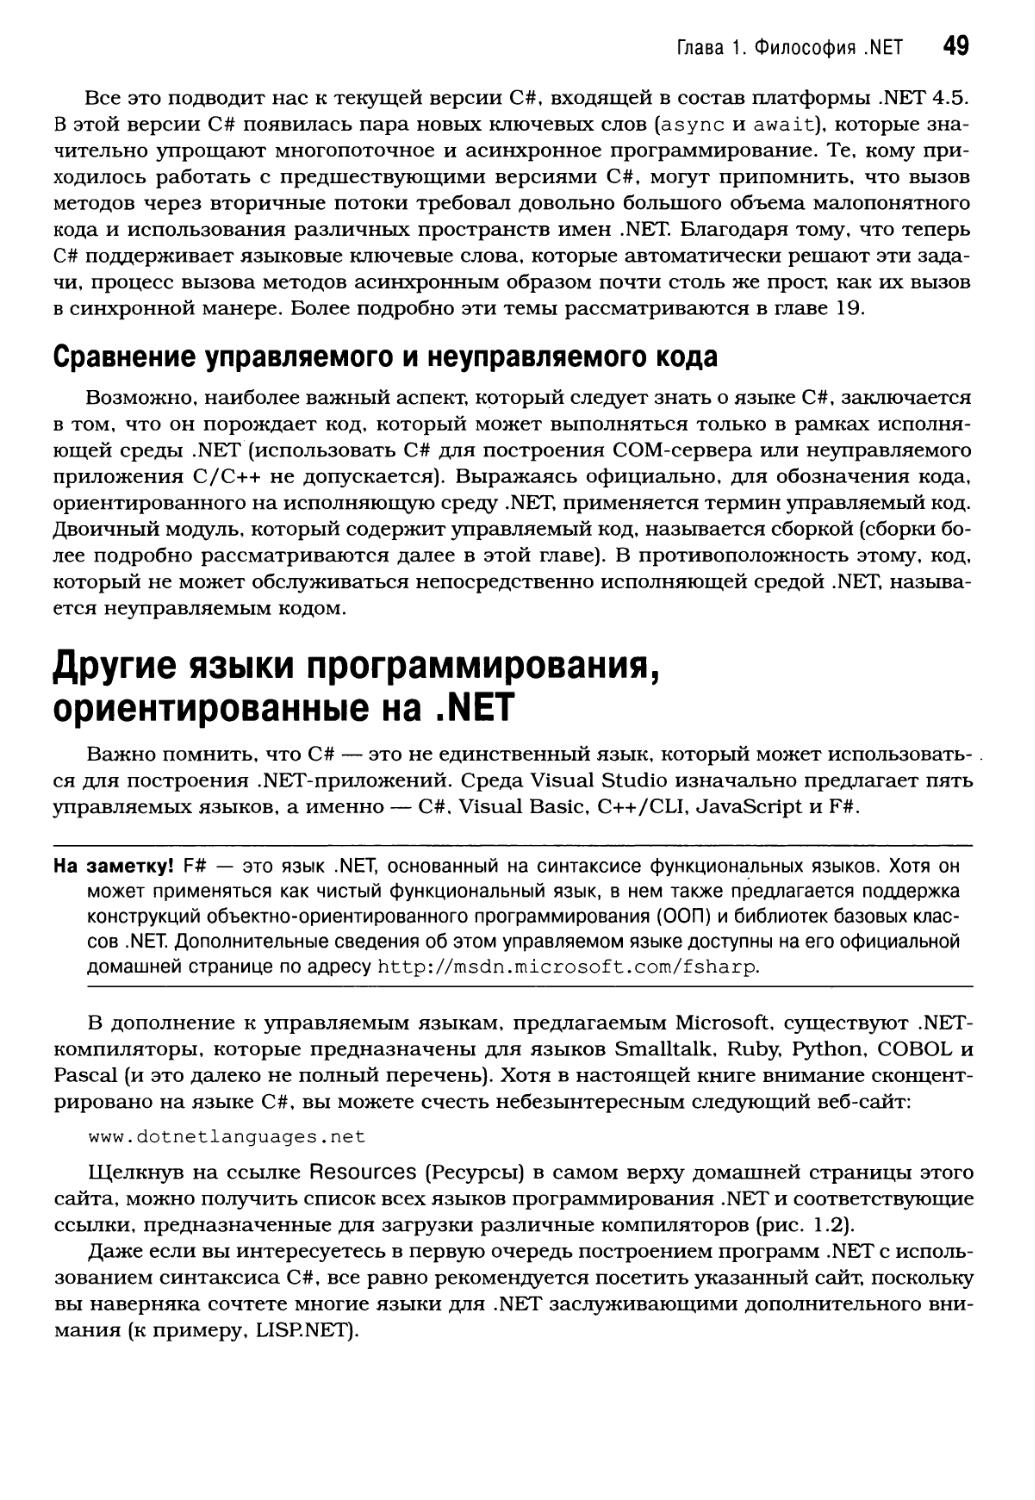 Сравнение управляемого и неуправляемого кода
Другие языки программирования, ориентированные на .NET